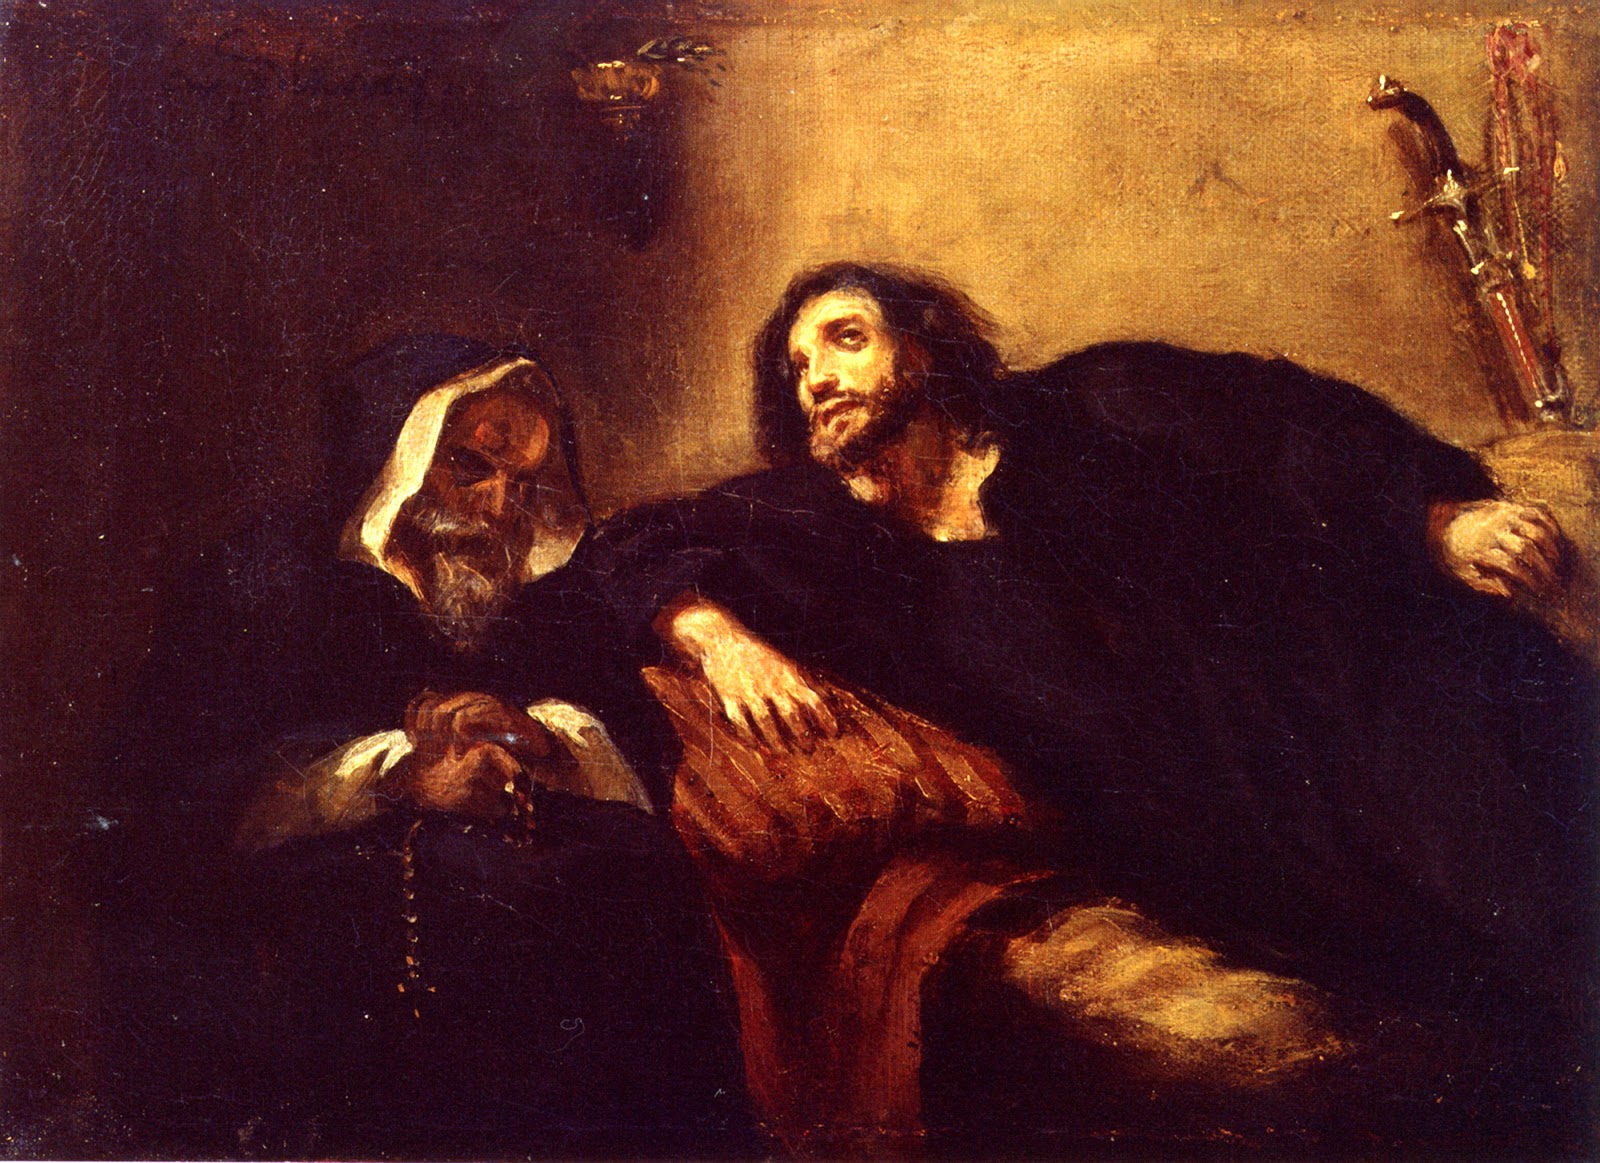 Eugene+Delacroix-1798-1863 (212).jpg